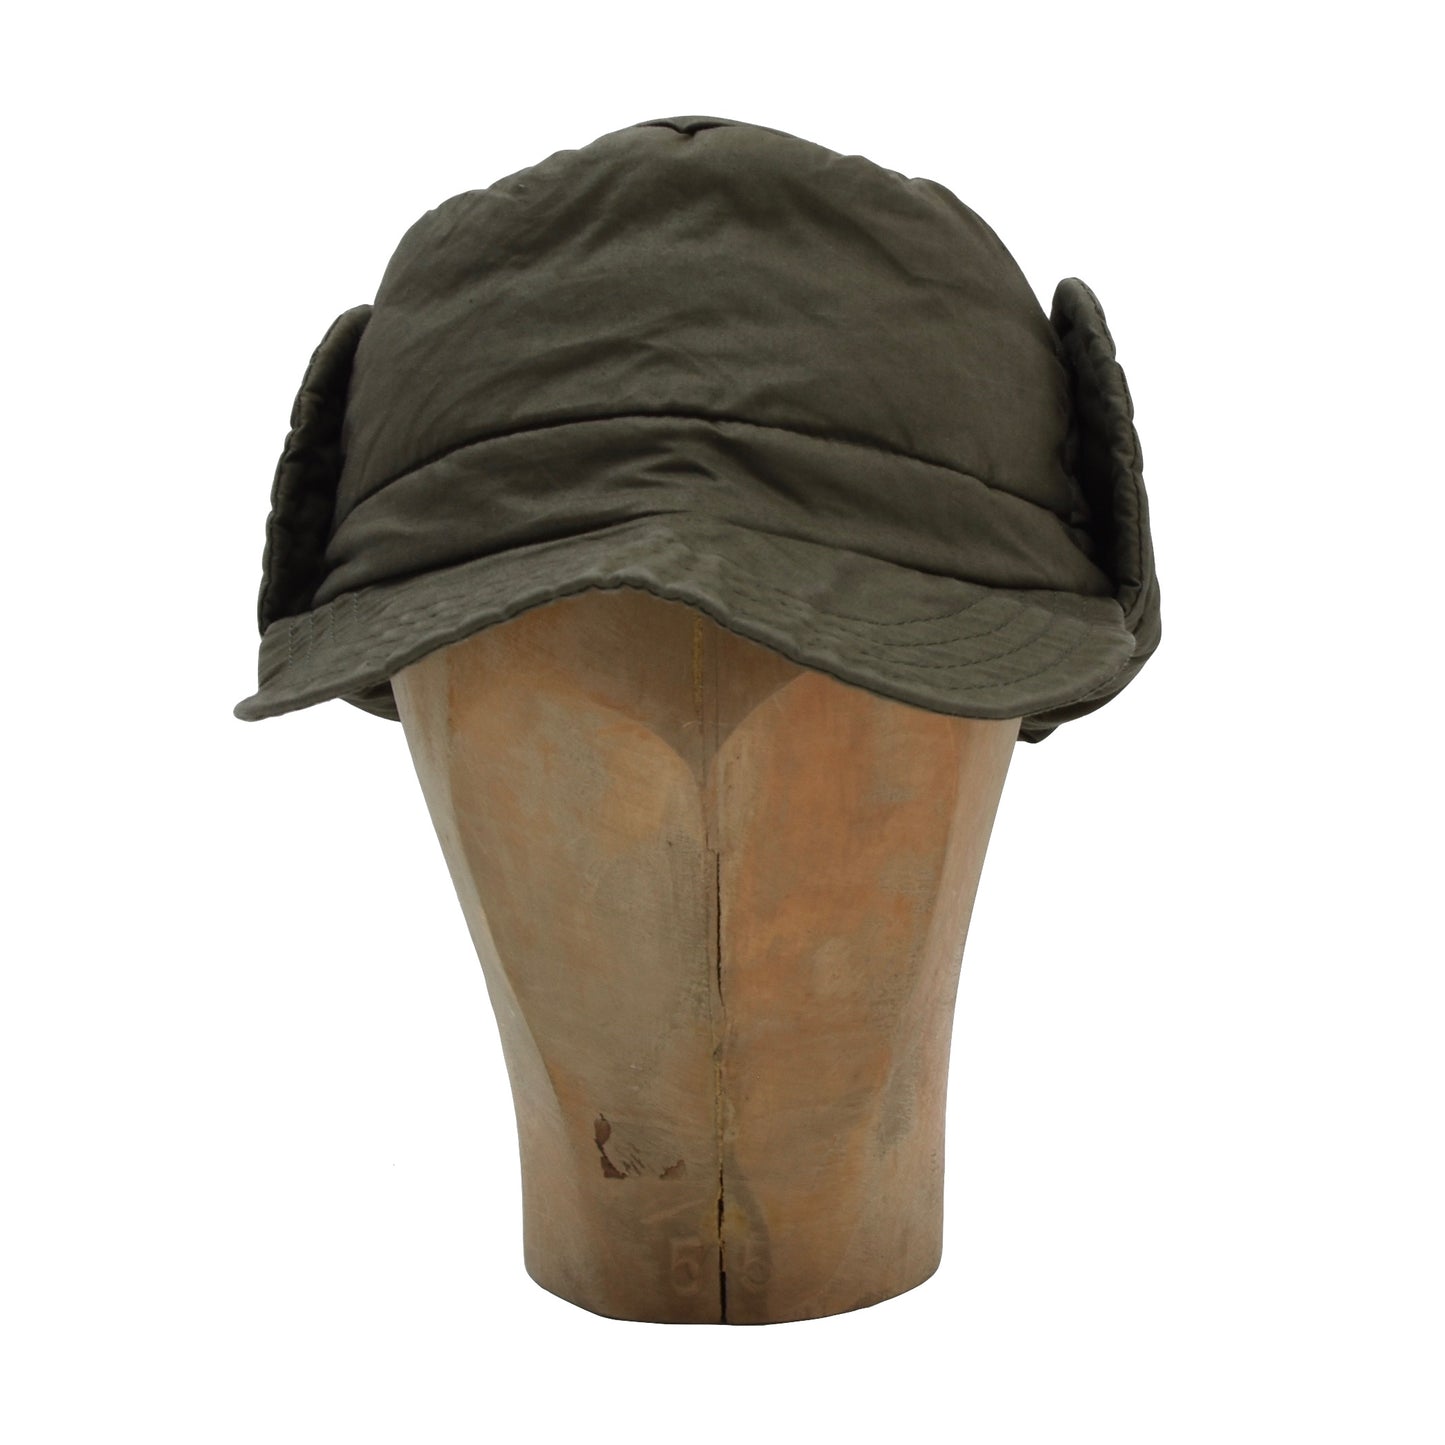 Vintage Elch Wool-Insulated Hunting Hat/Cap Größe 3 - grün